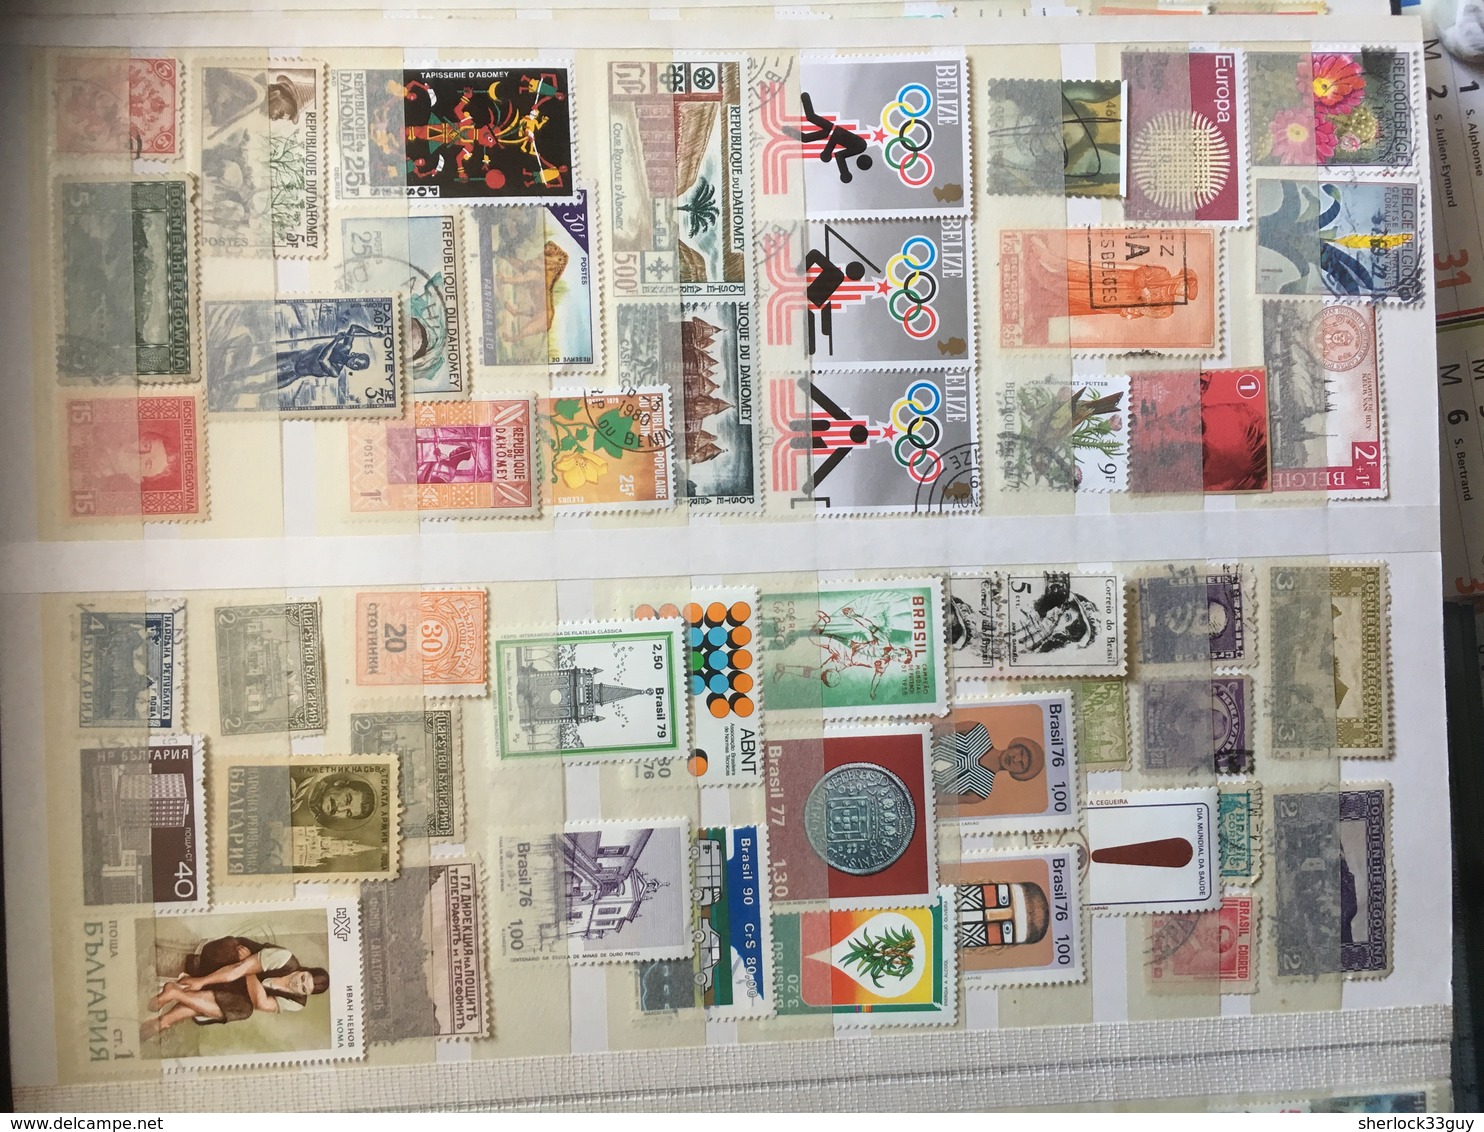 DIVERS FRANCE + MONDE. Plus de 1500 timbres. Forte côte